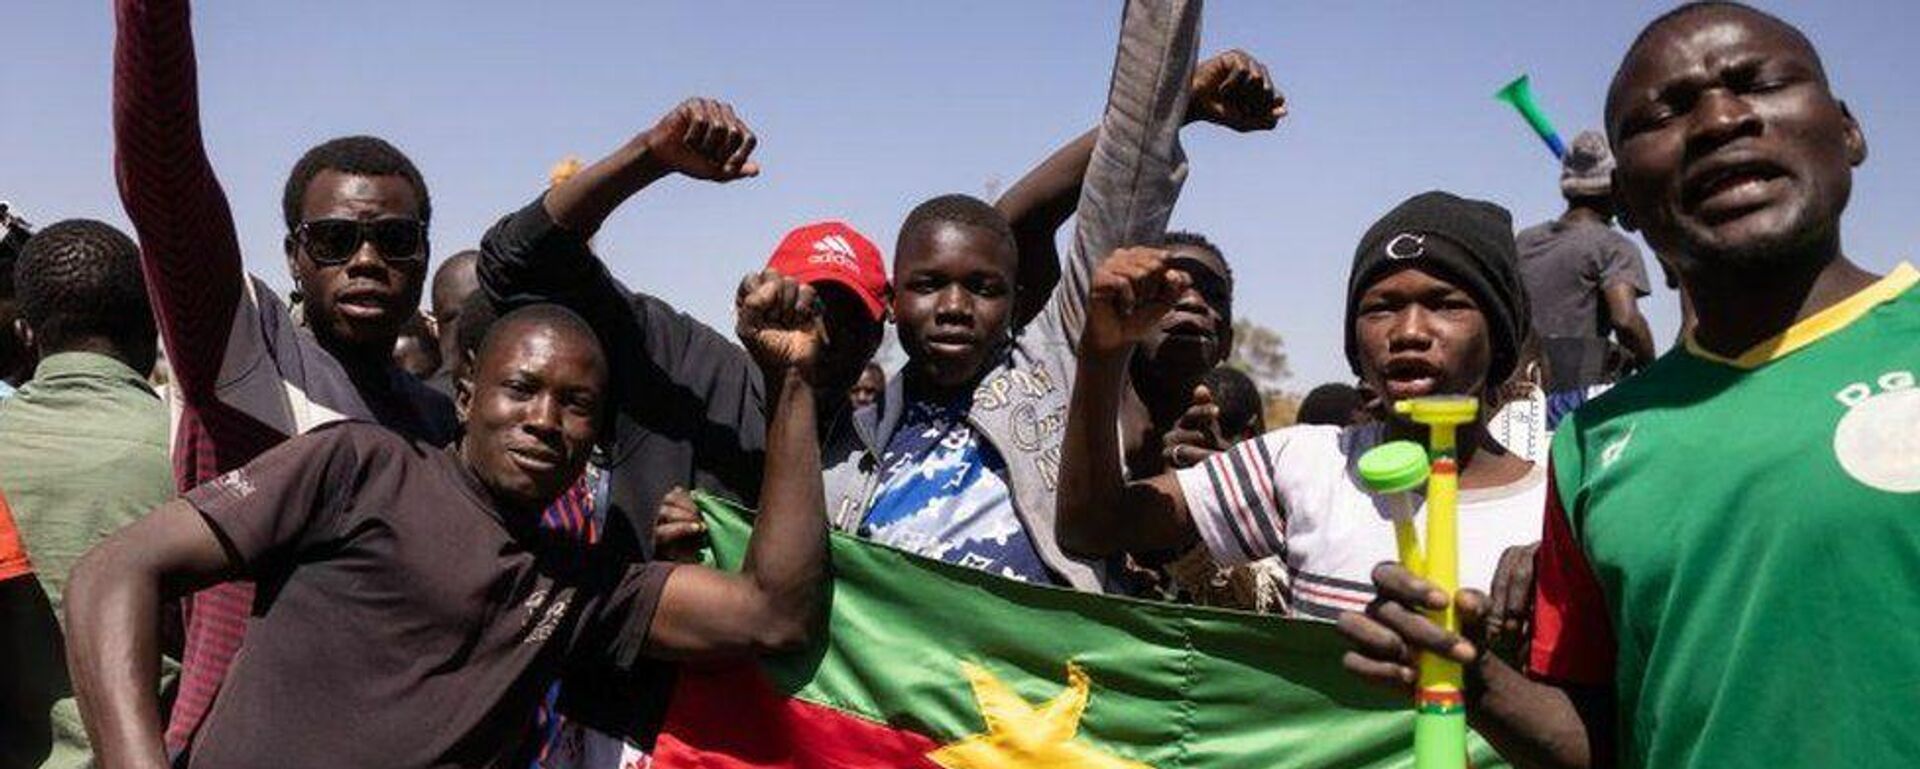 Burkina Faso'da darbe: Cumhurbaşkanı istifa etti - Sputnik Türkiye, 1920, 25.01.2022